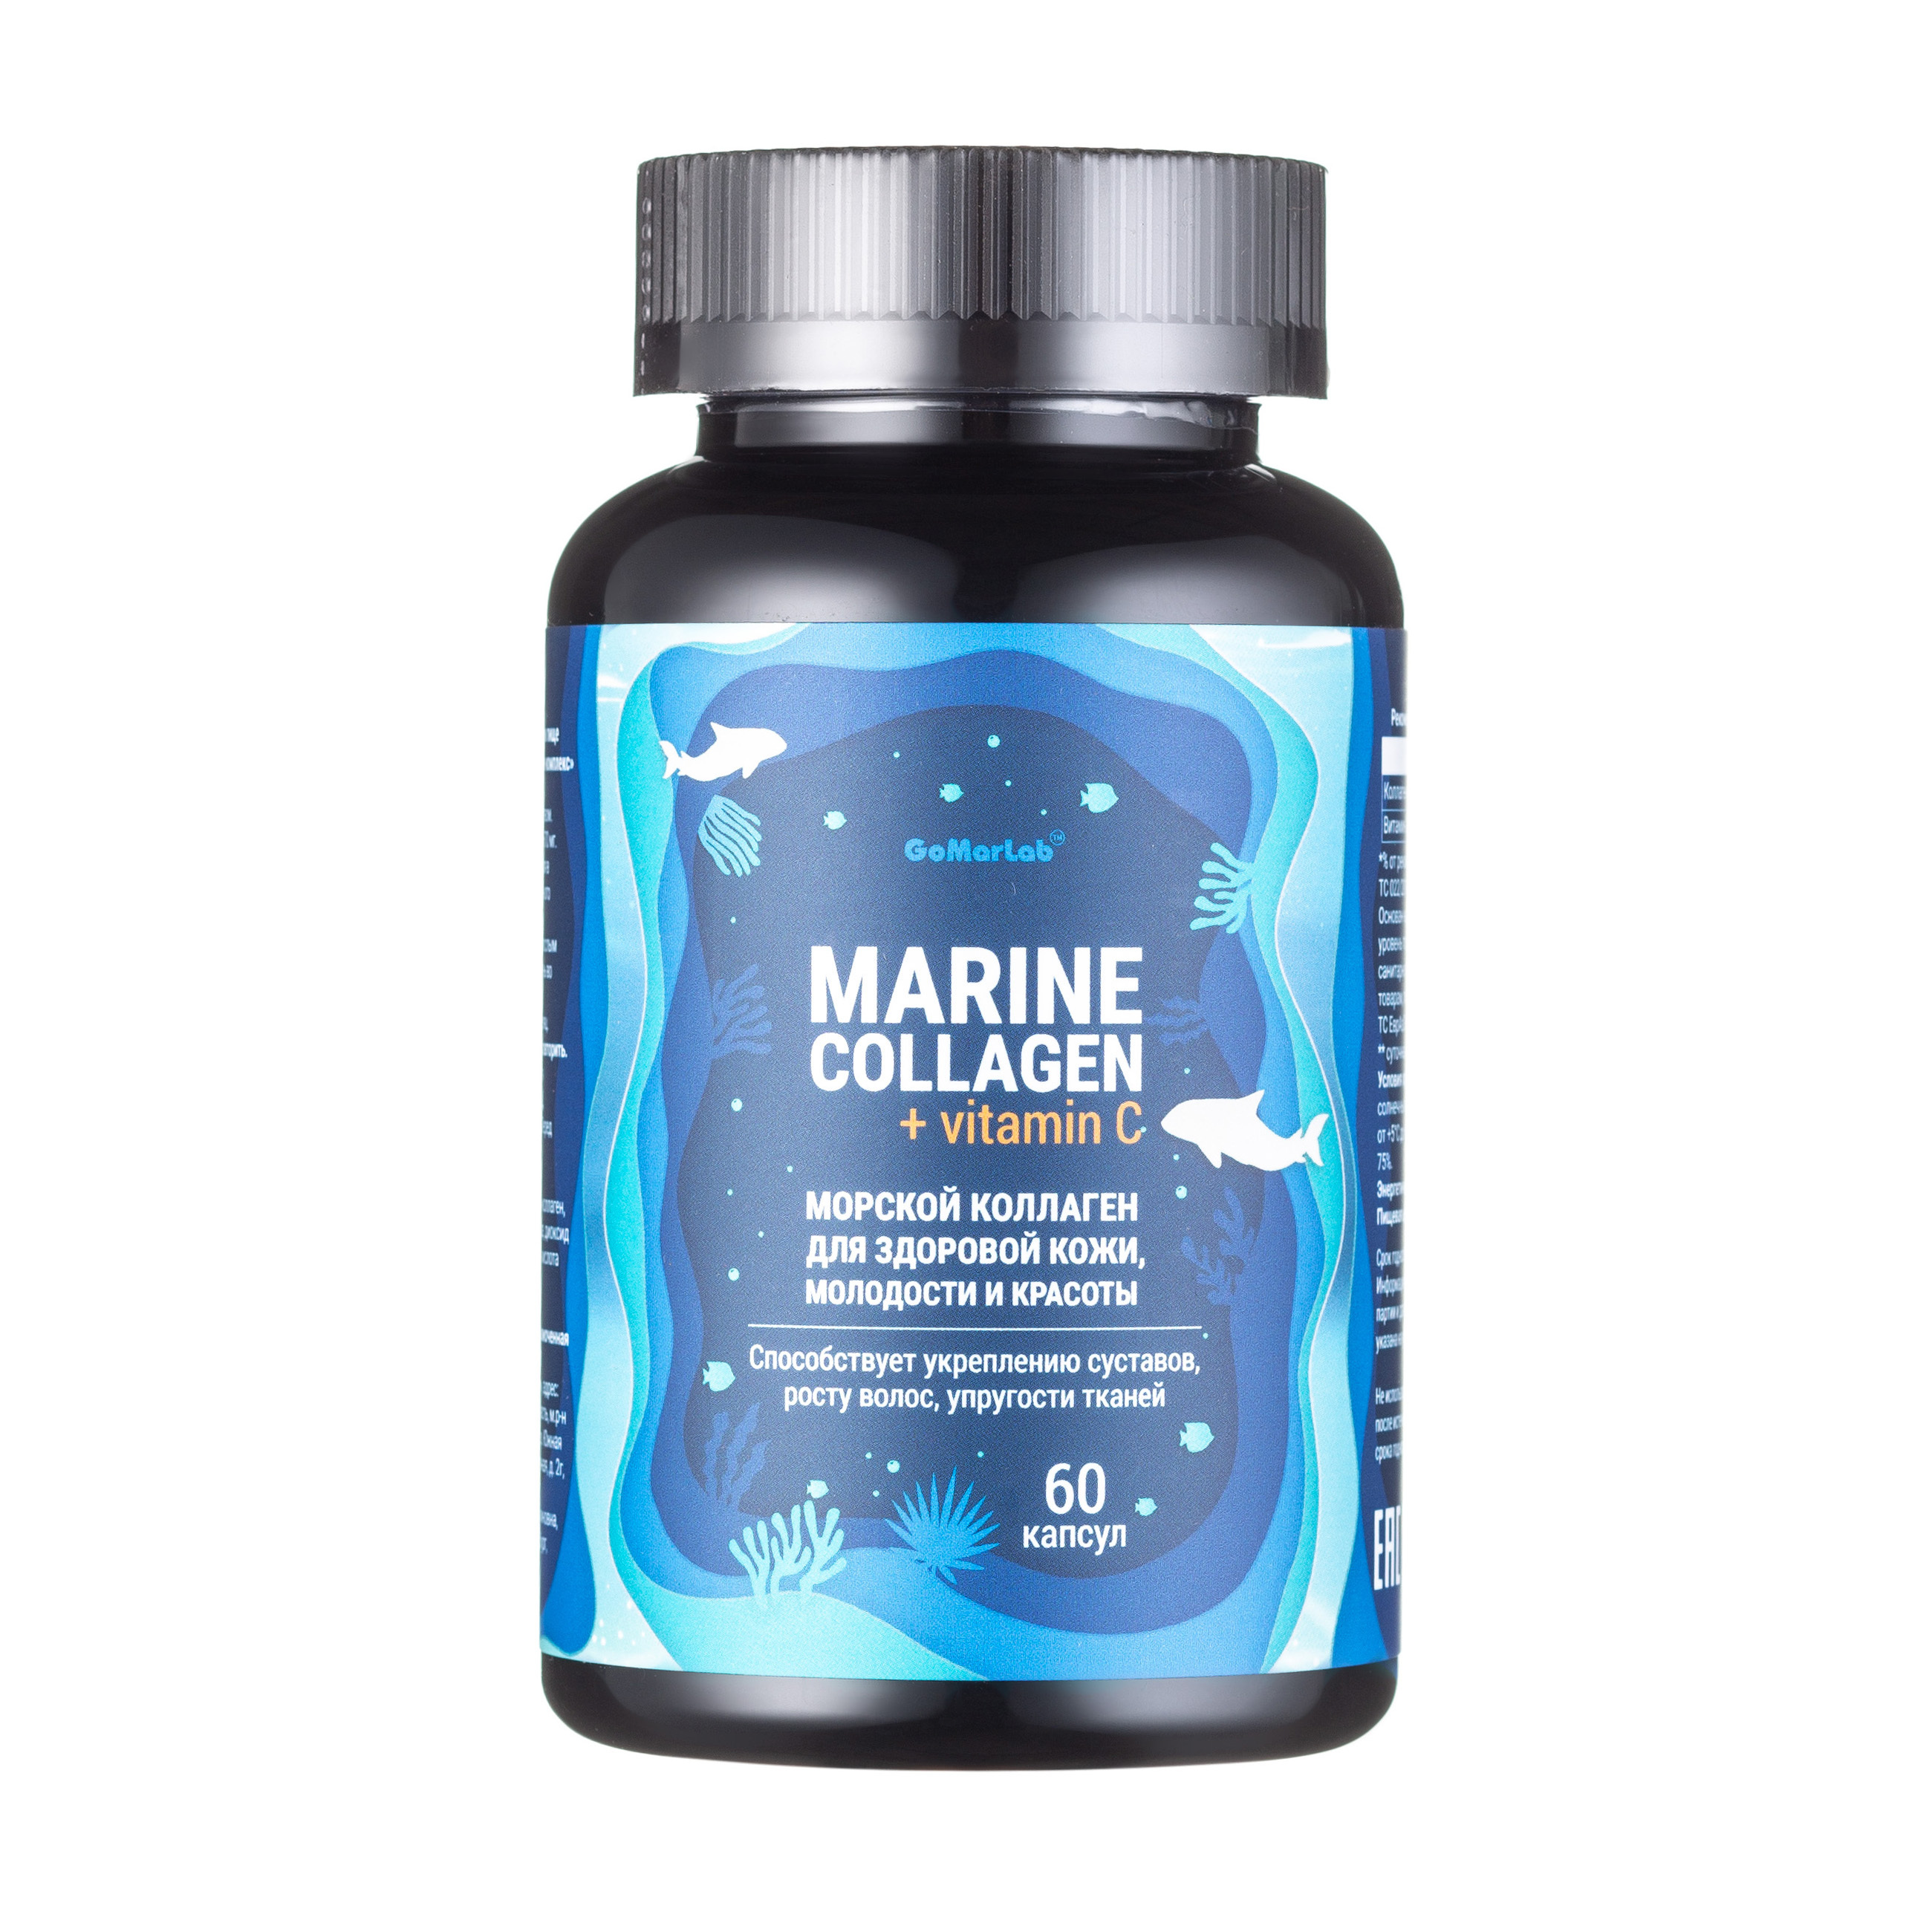 Морской коллаген рейтинг лучших. Marine Collagen морской коллаген. Marine Collagen 60 капсул. Коллаген Marine Collagen в капсулах. Nfo коллаген морской.